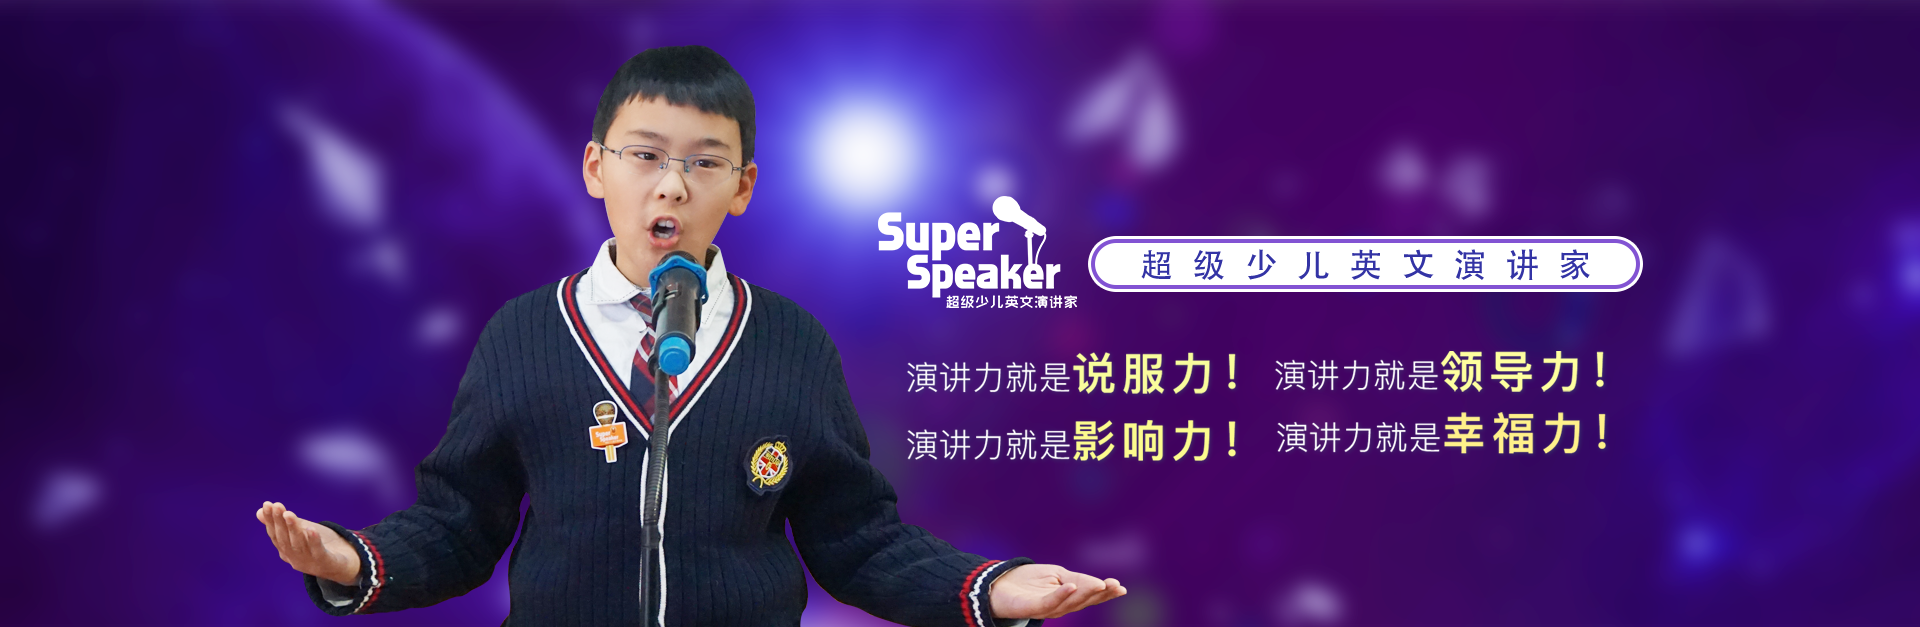 英语培训课程-super speaker